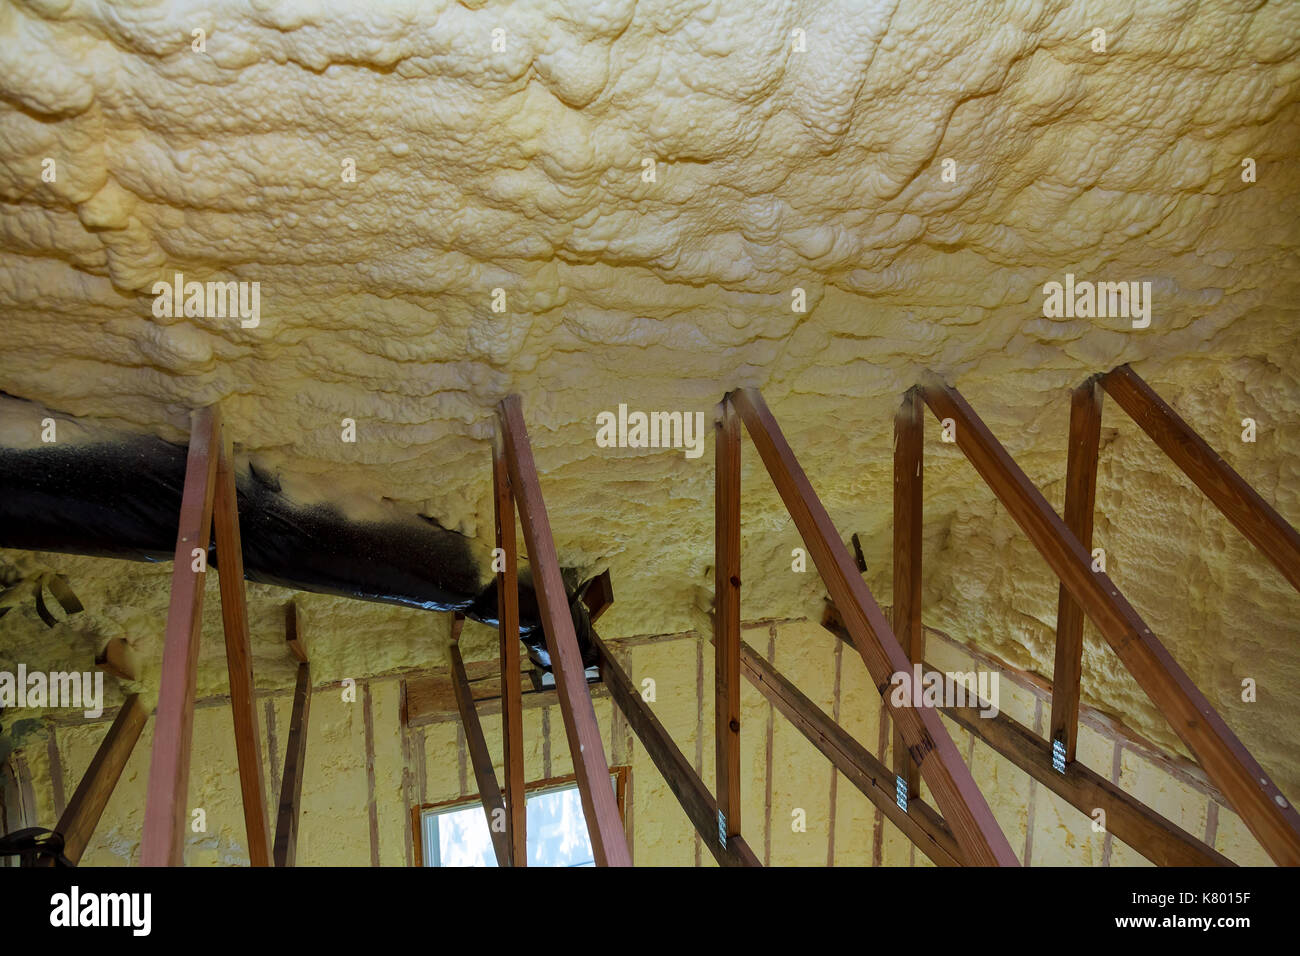 Keller Isolierung mit Schaum. Wärmedämmung der Wände mit